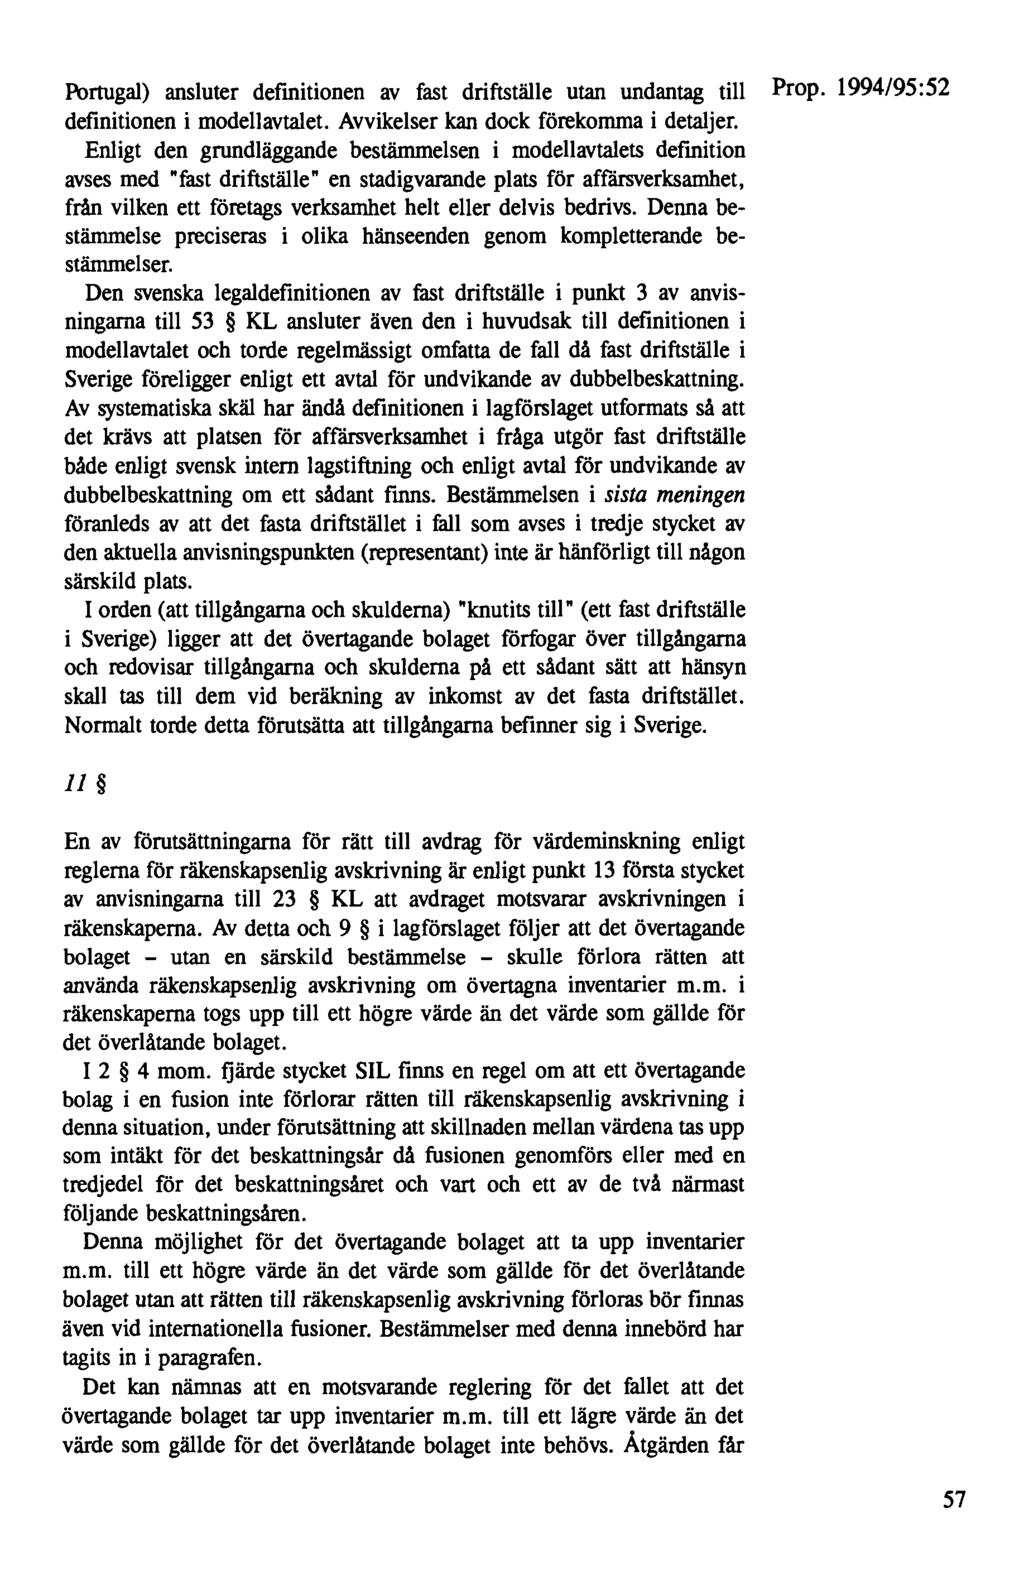 Portugal) ansluter definitionen av fast driftställe utan undantag till Prop. 1994/95: 52 definitionen i modellavtalet. Avvikelser kan dock förekomma i detaljer.